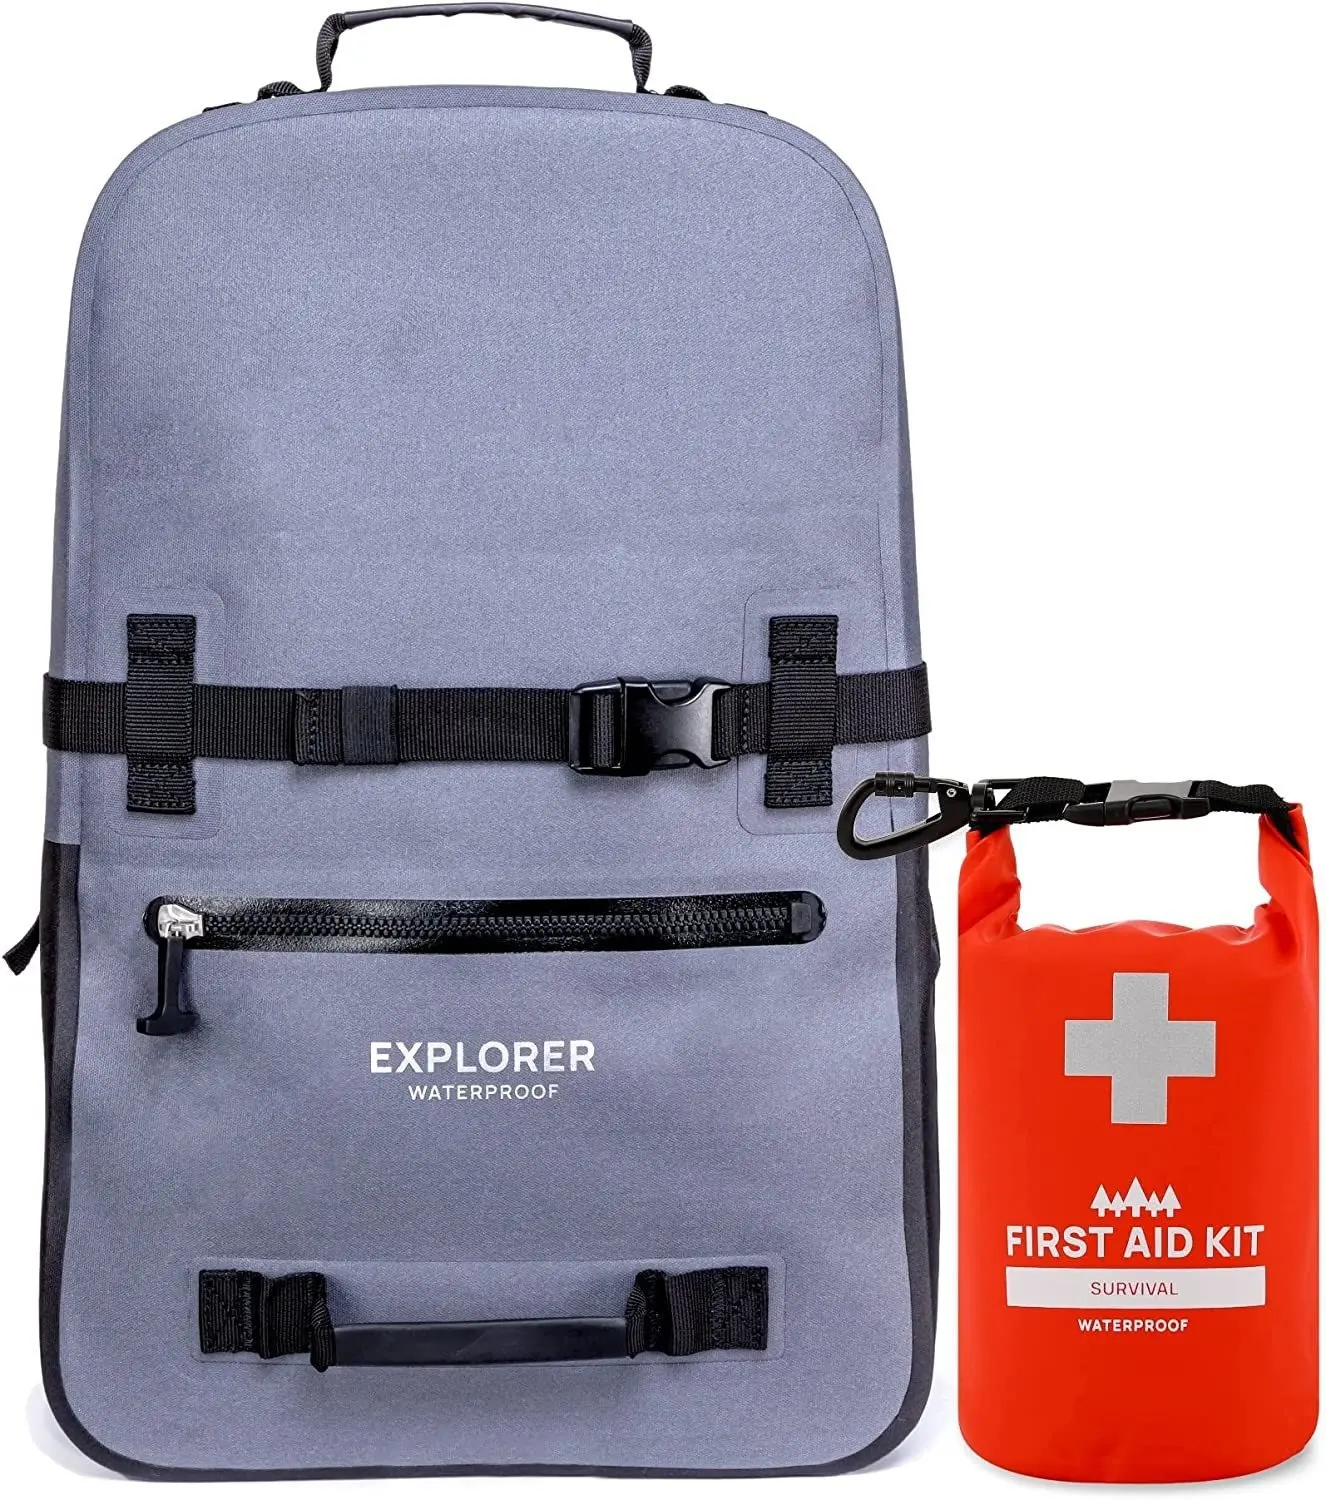 Breakwater Supply Waterproof Backpack and Waterproof First Aid Survival Kit Bundle Dry Bag